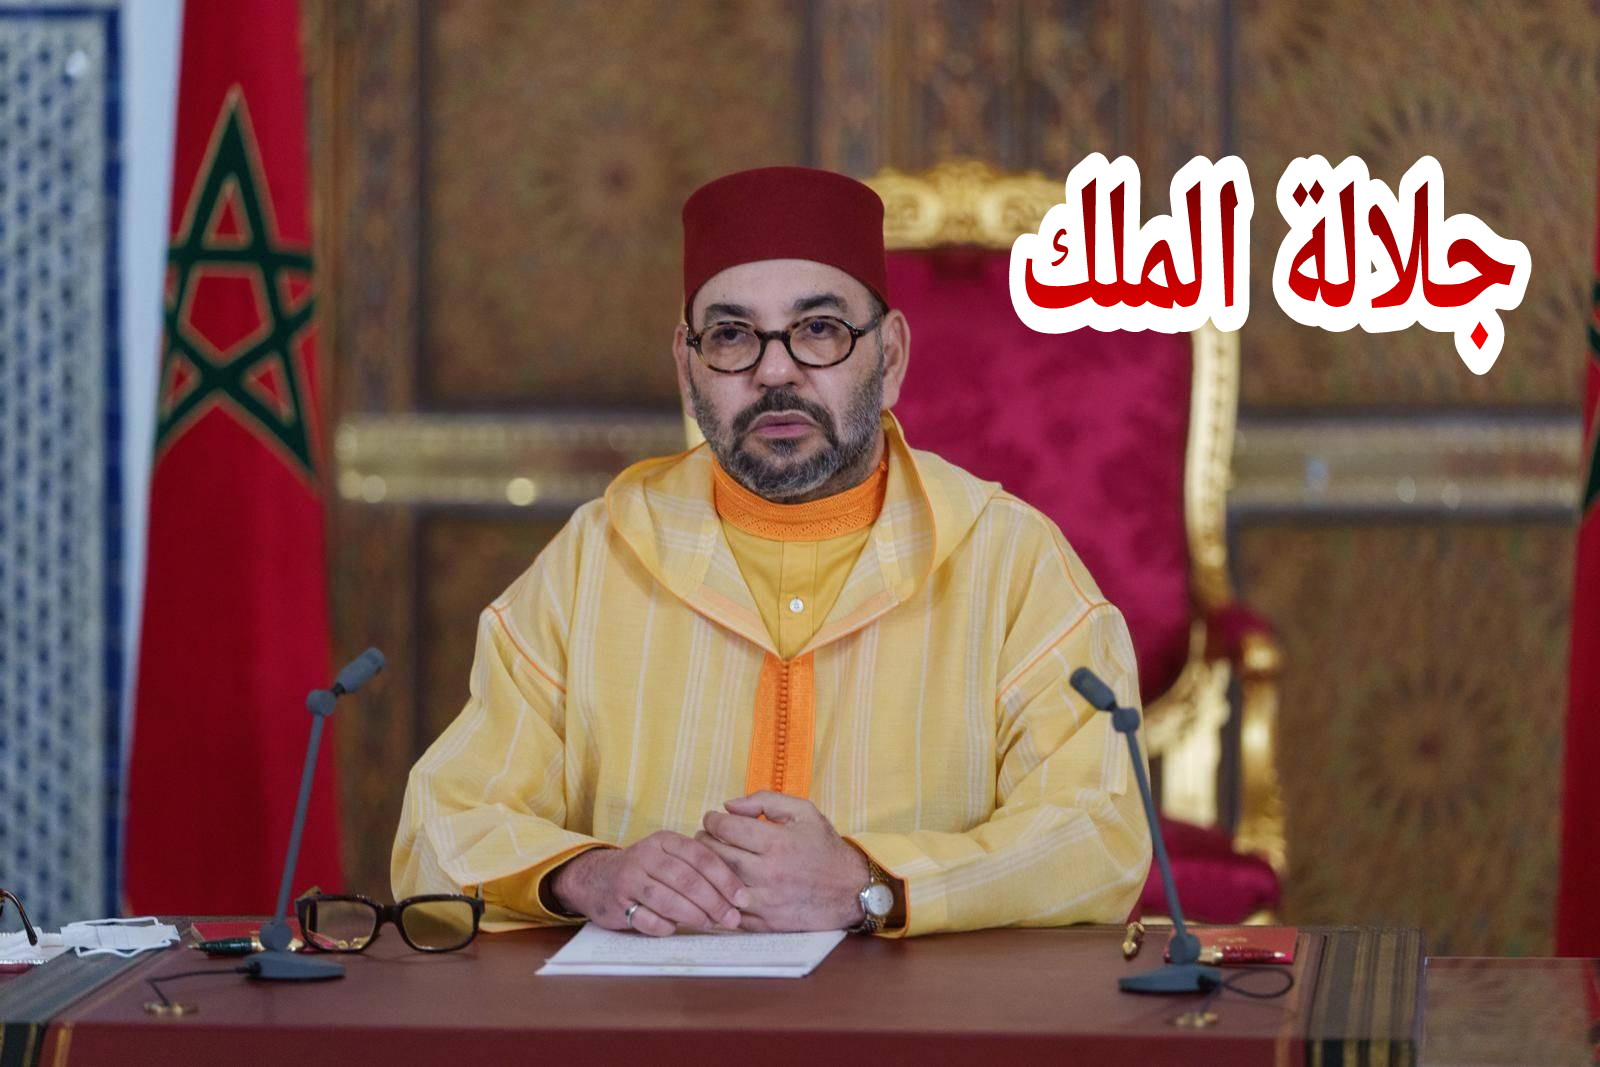 جلالة الملك محمد السادس يبعث برقية تعزية مؤ،ثرة إلى أسرة الراحل محمد المعتصم =بلاغ=